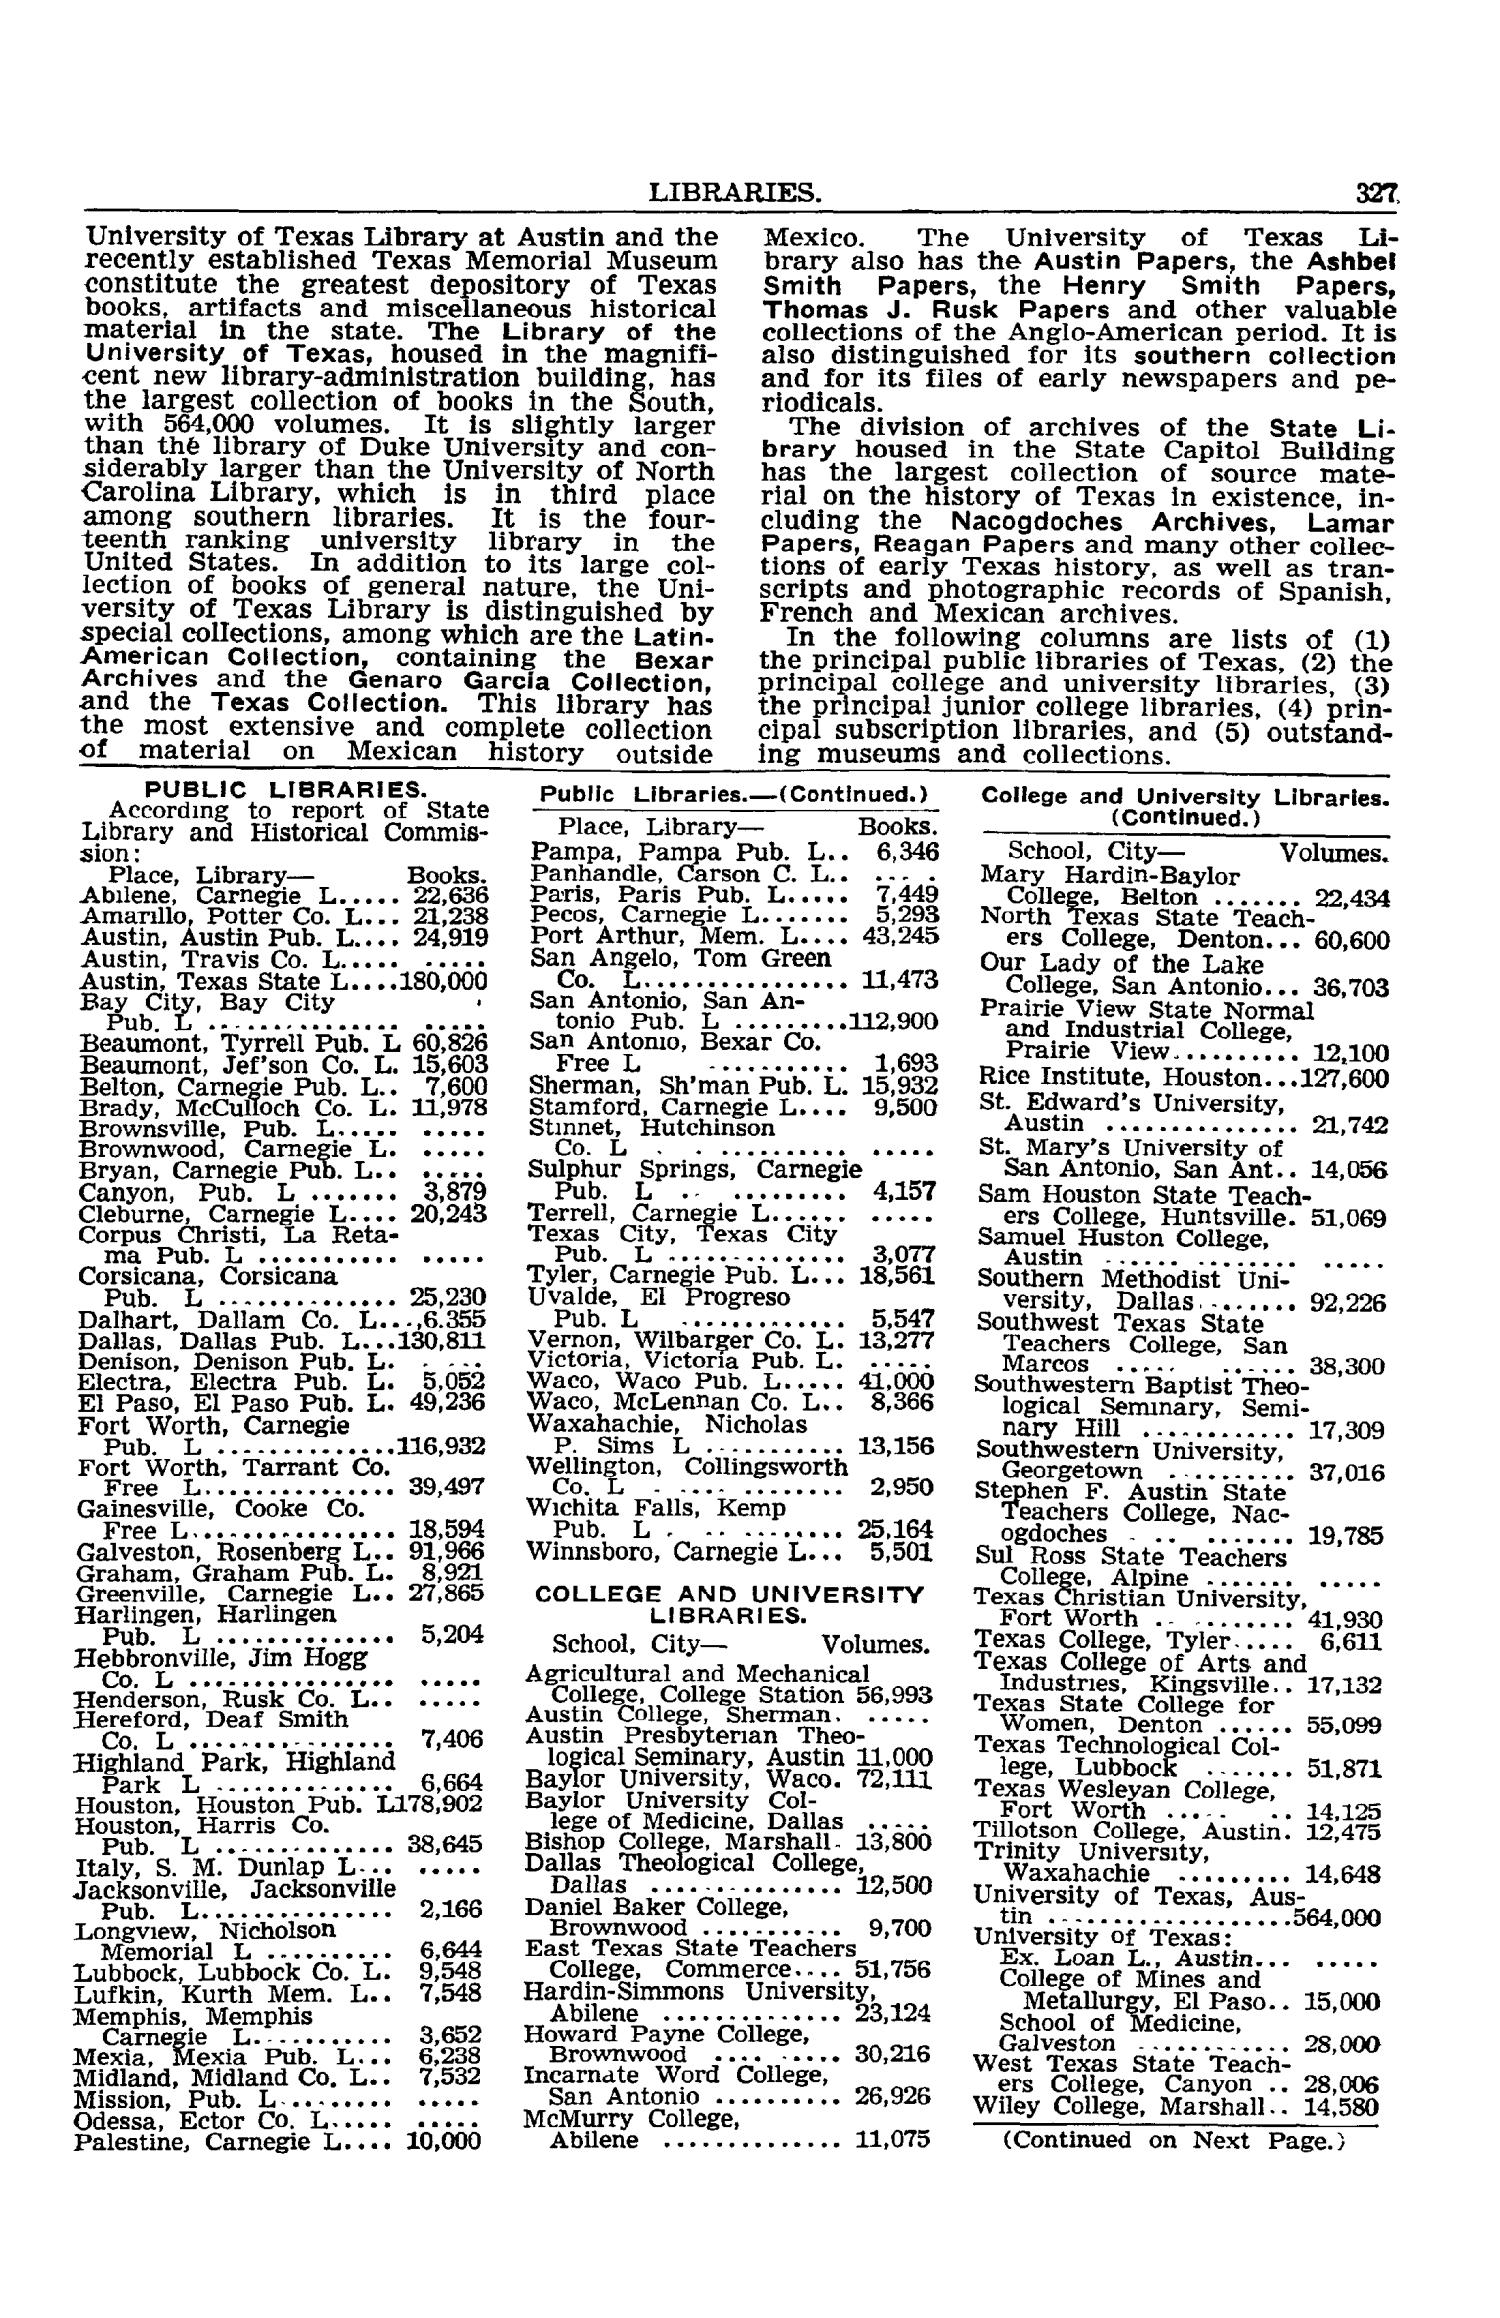 Texas Almanac, 1939-1940
                                                
                                                    327
                                                